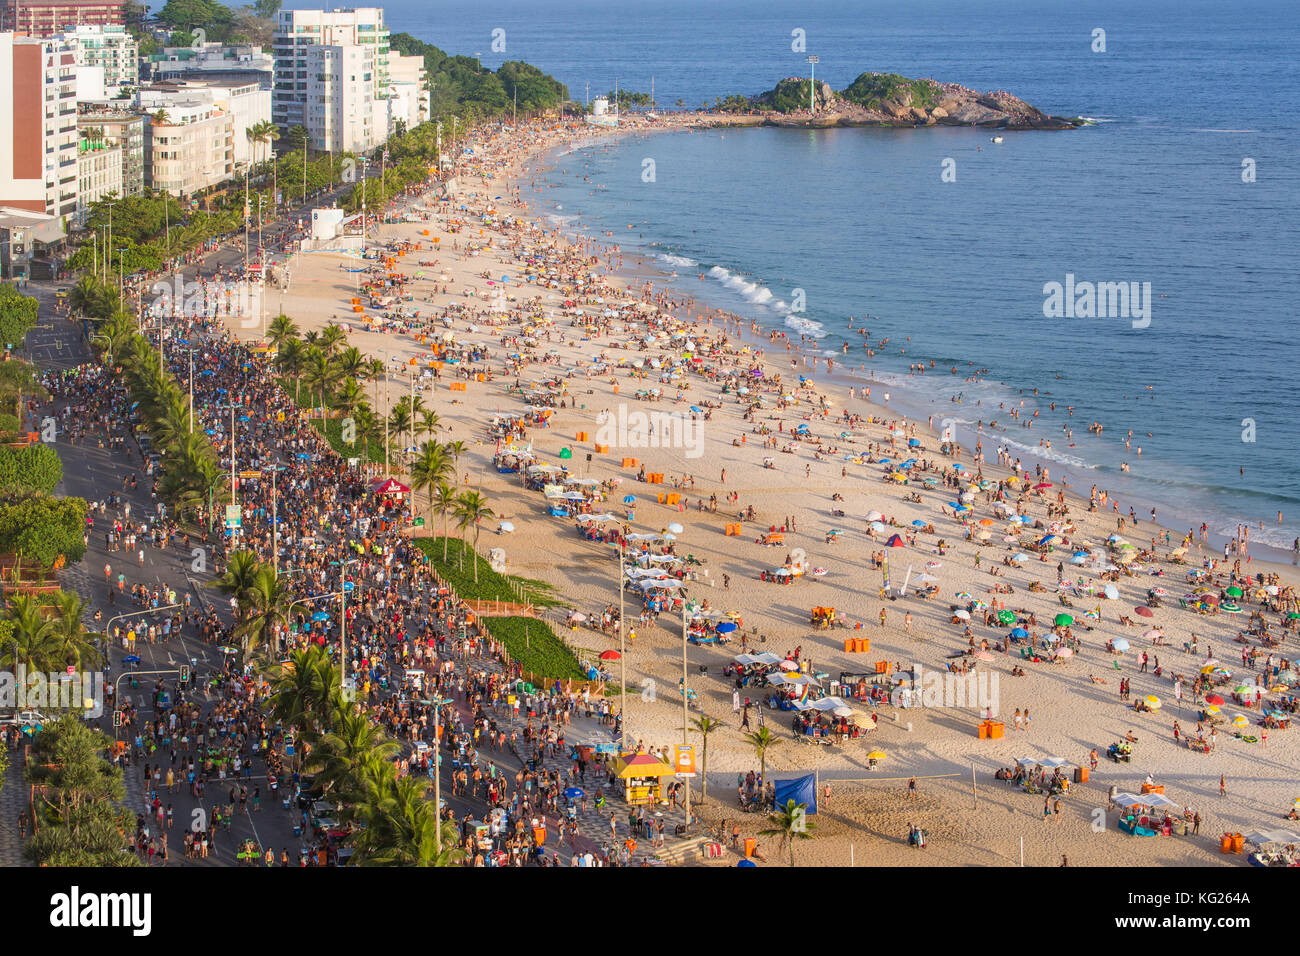 La plage d'Ipanema, carnaval de rue, Rio de Janeiro, Brésil, Amérique du Sud Banque D'Images